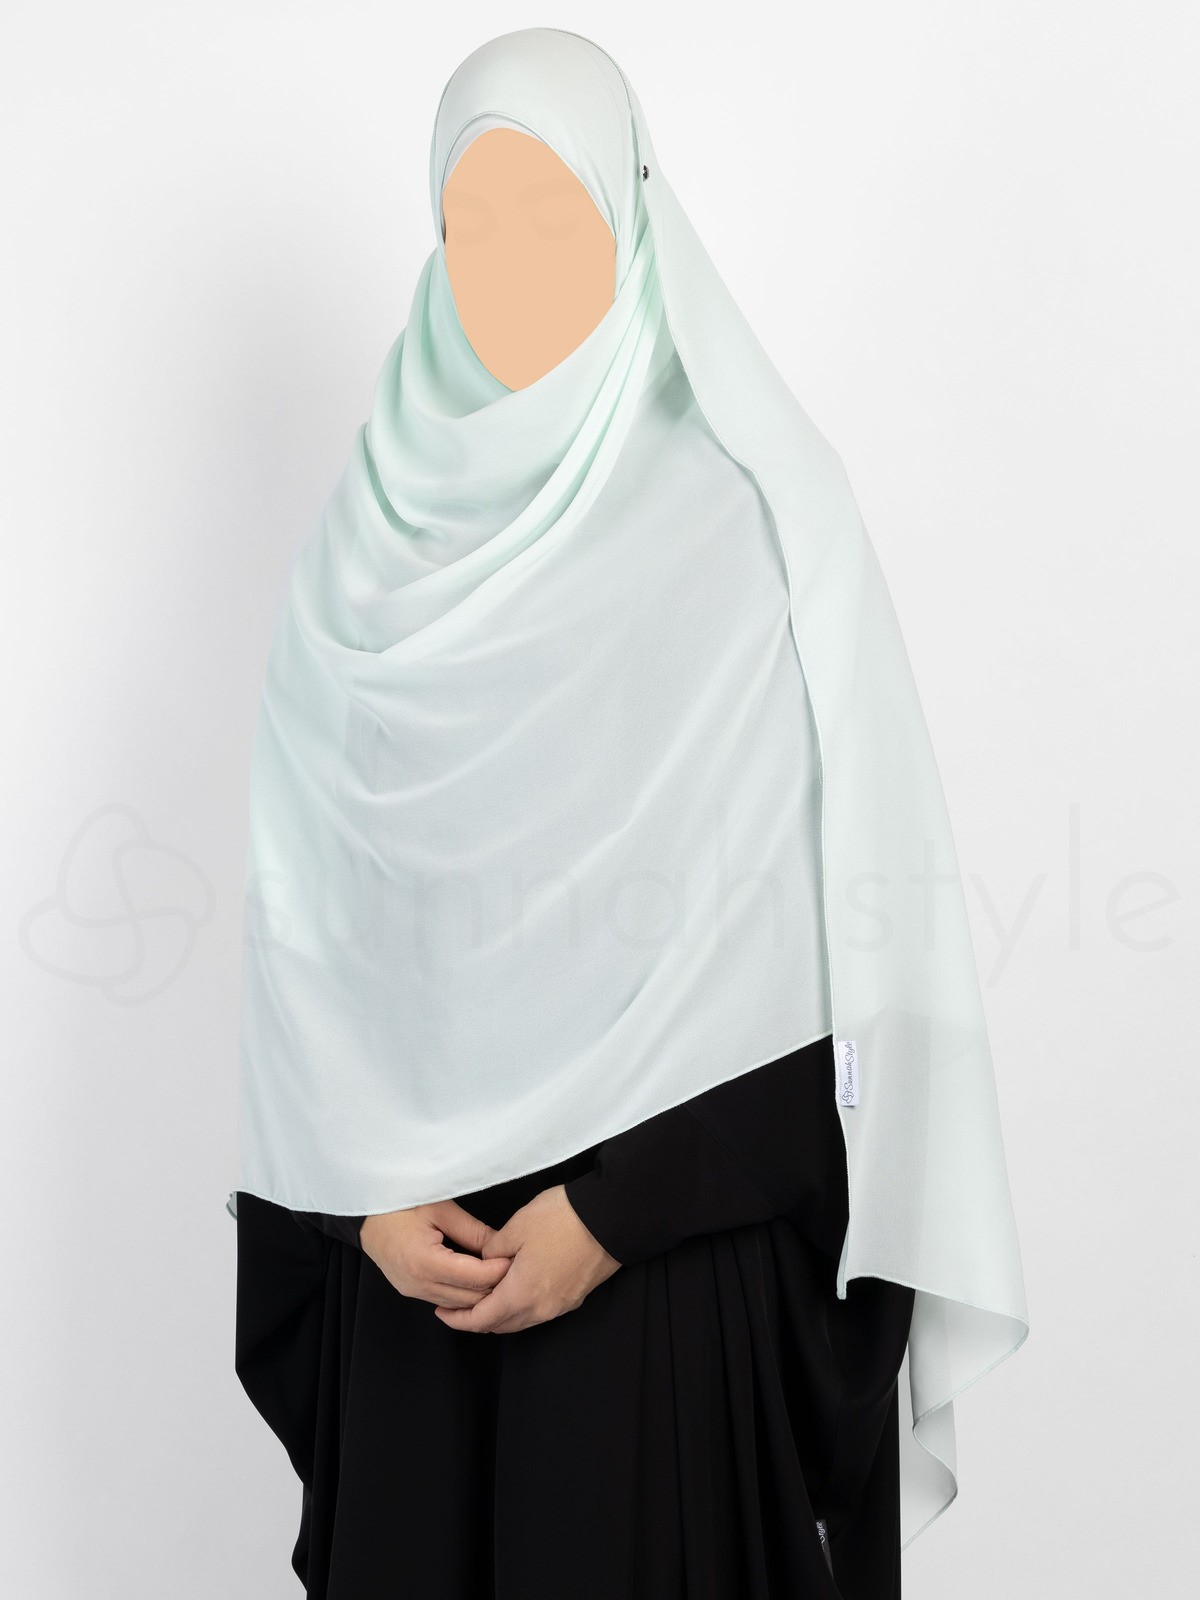 Sunnah Style - Essentials Shayla (Chiffon) - XL (Sterling)